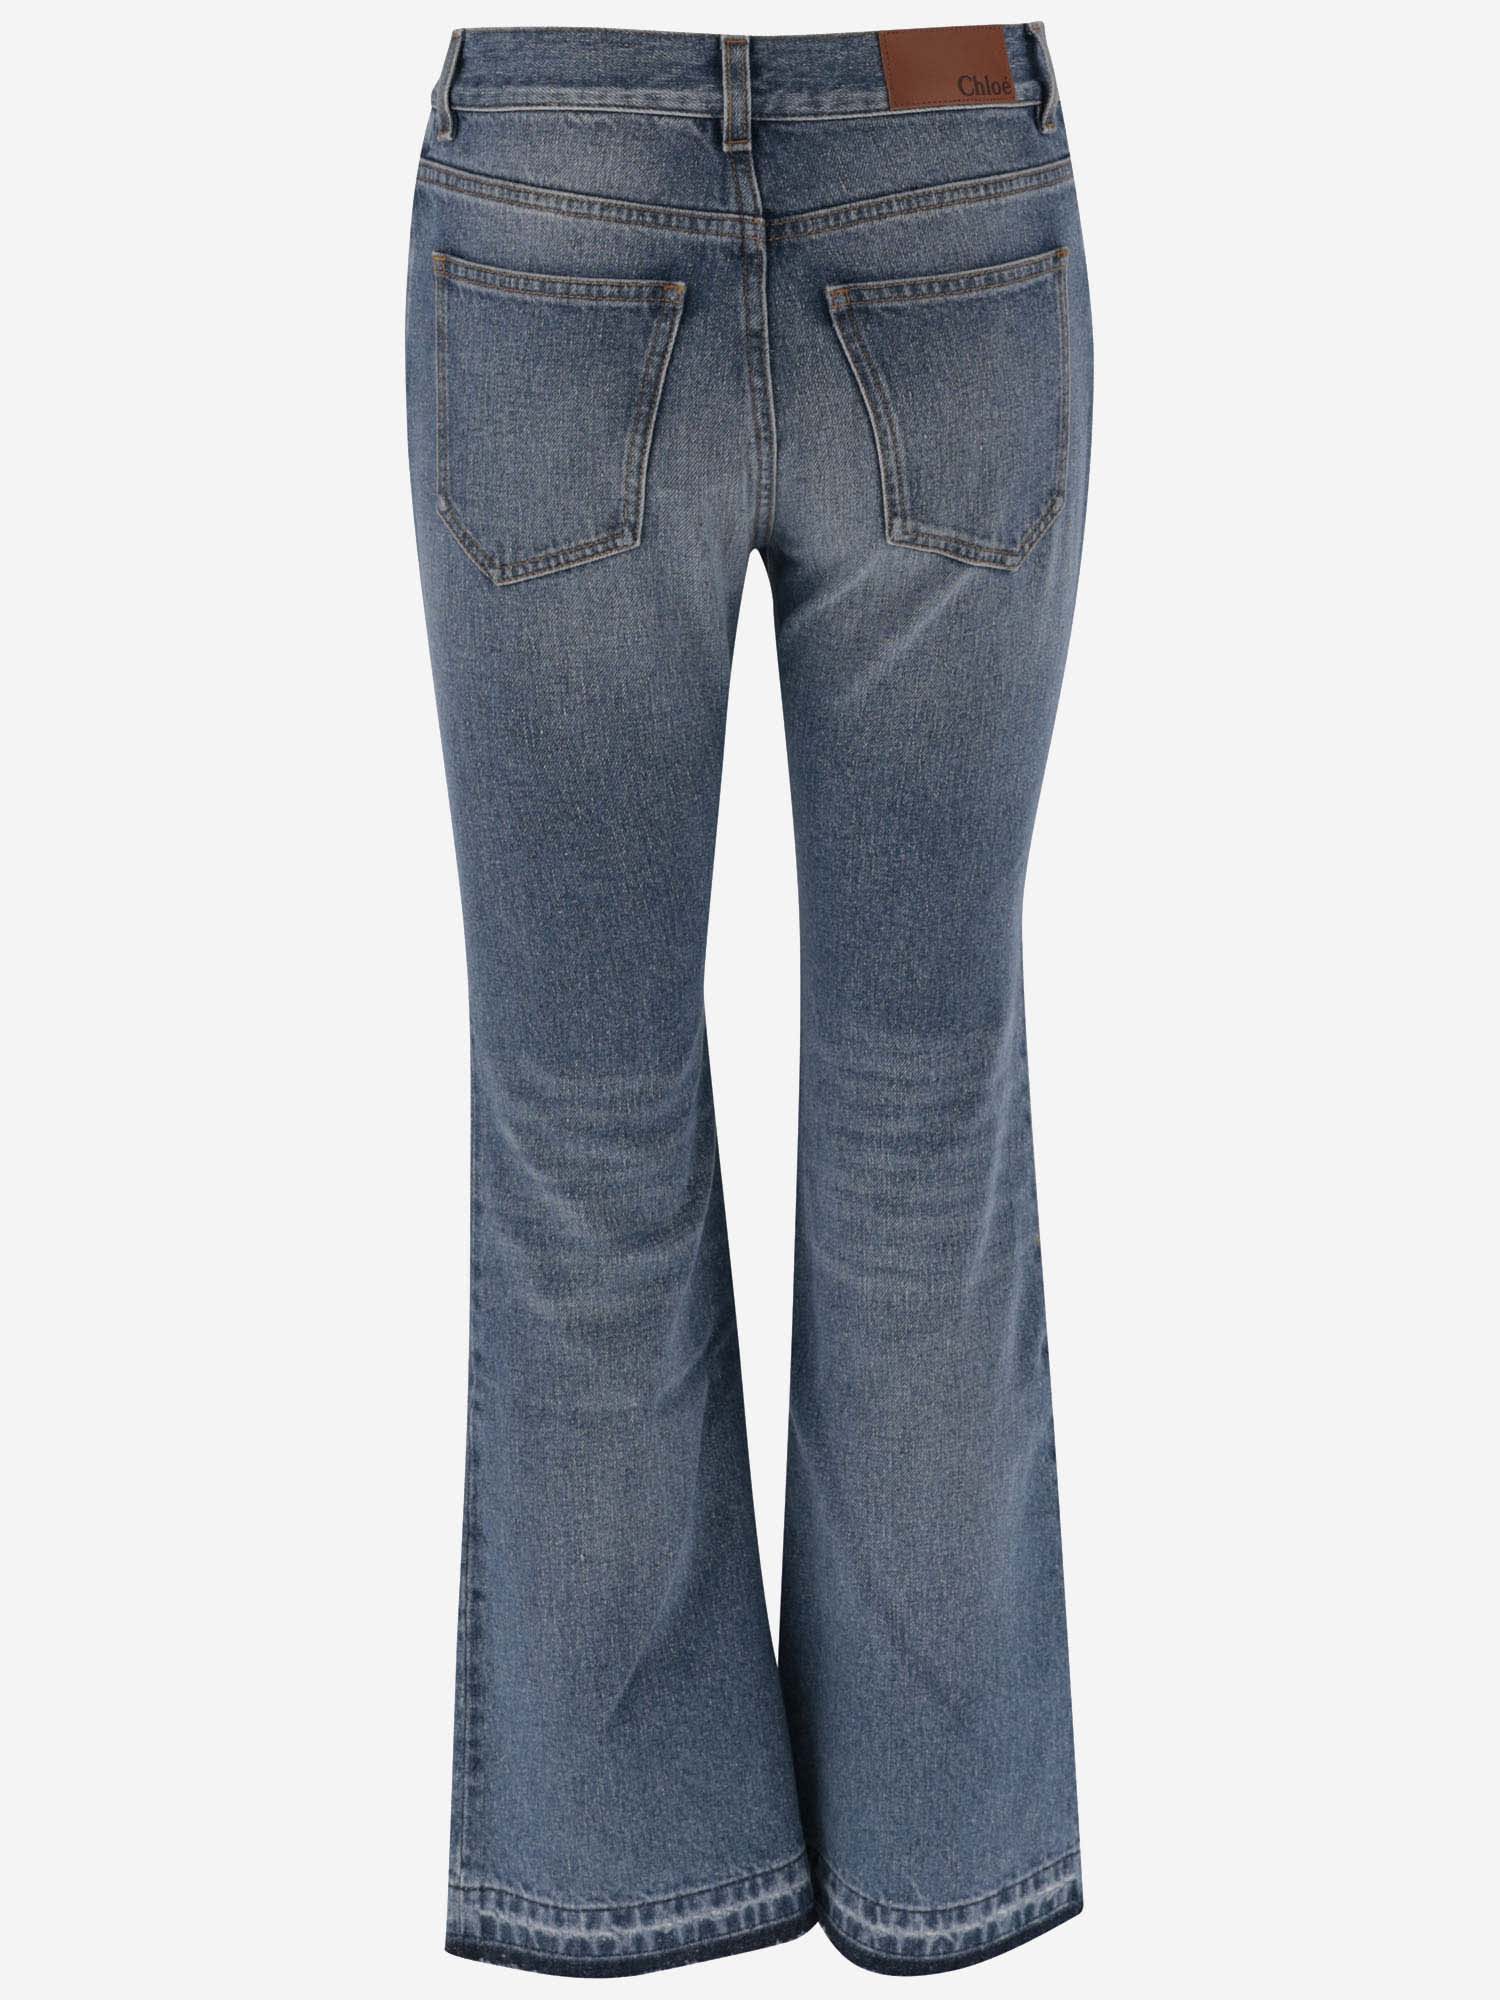 Shop Chloé Cotton Blend Jeans